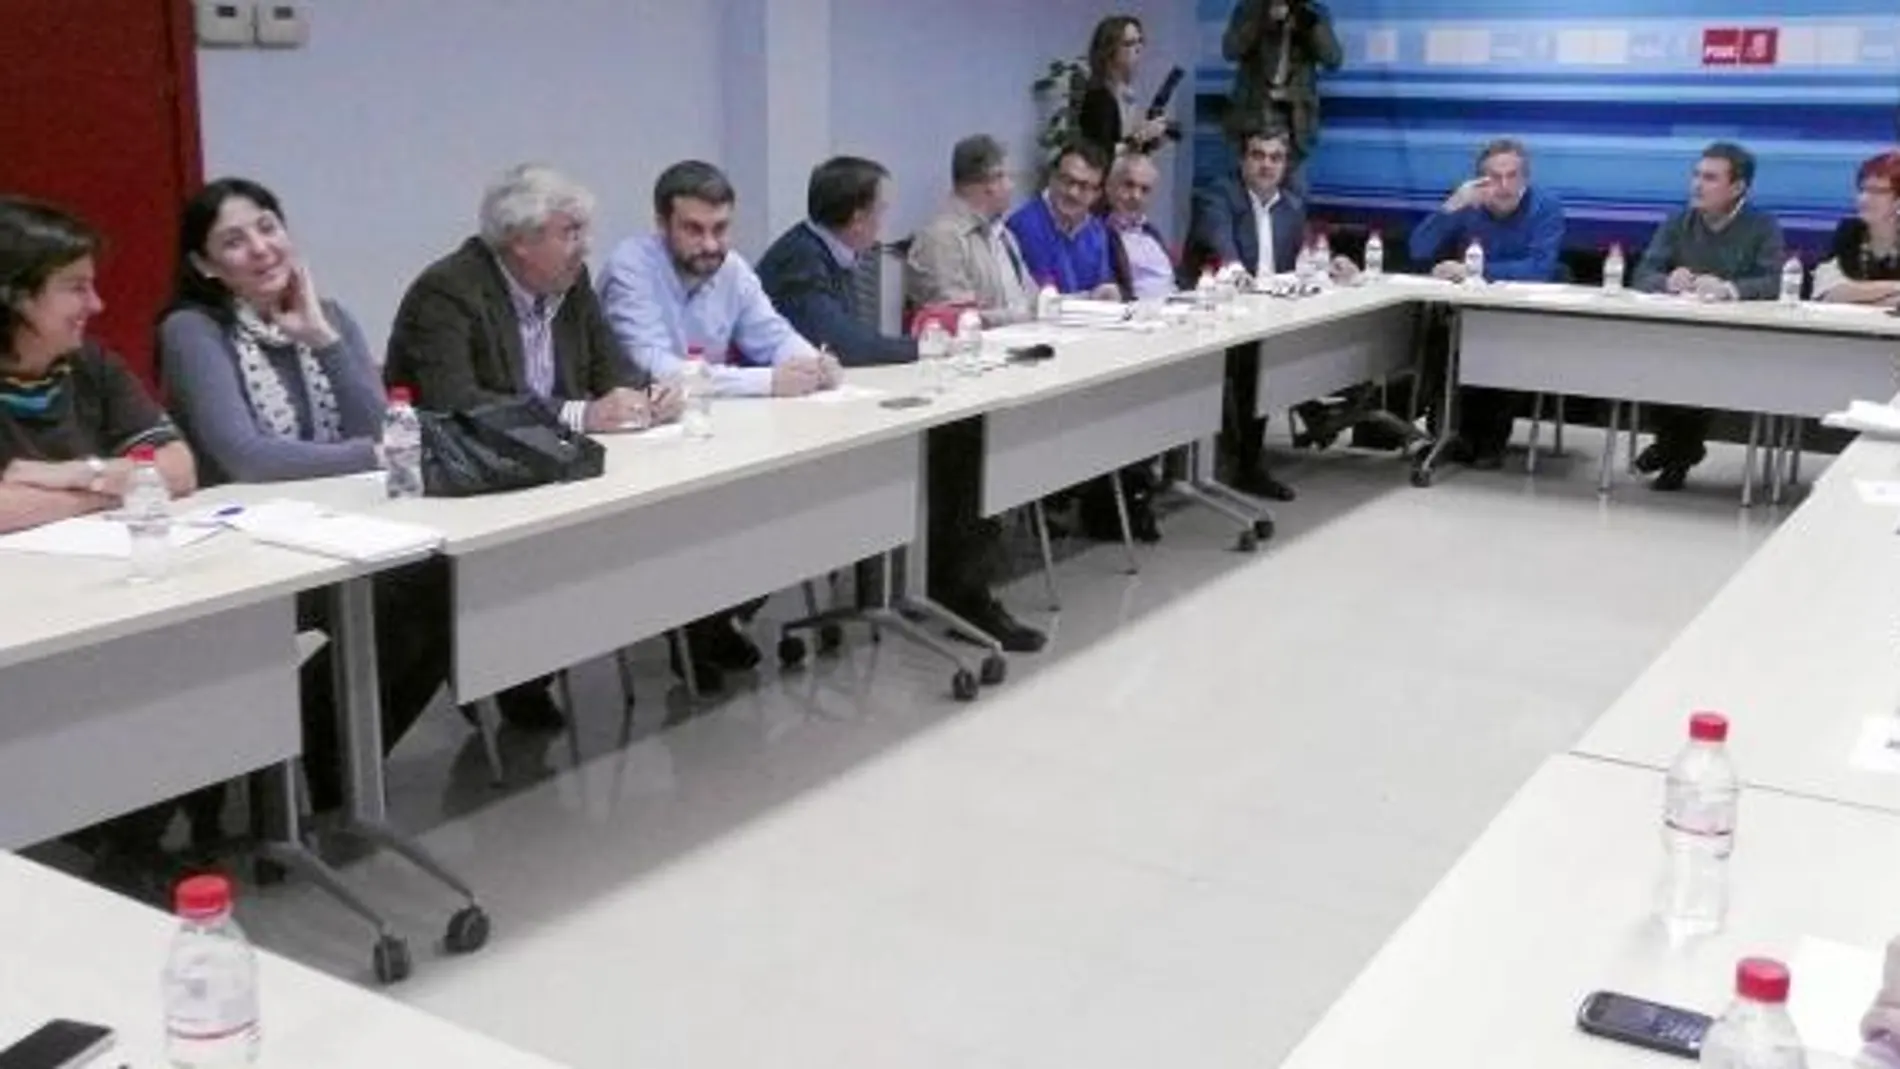 Francisco Oñate, Pedro Saura y Begoña García Retegui presidieron ayer la reunión de la Ejecutiva Regional del Partido Socialista de la Región de Murcia en la que se analizaron los resultados